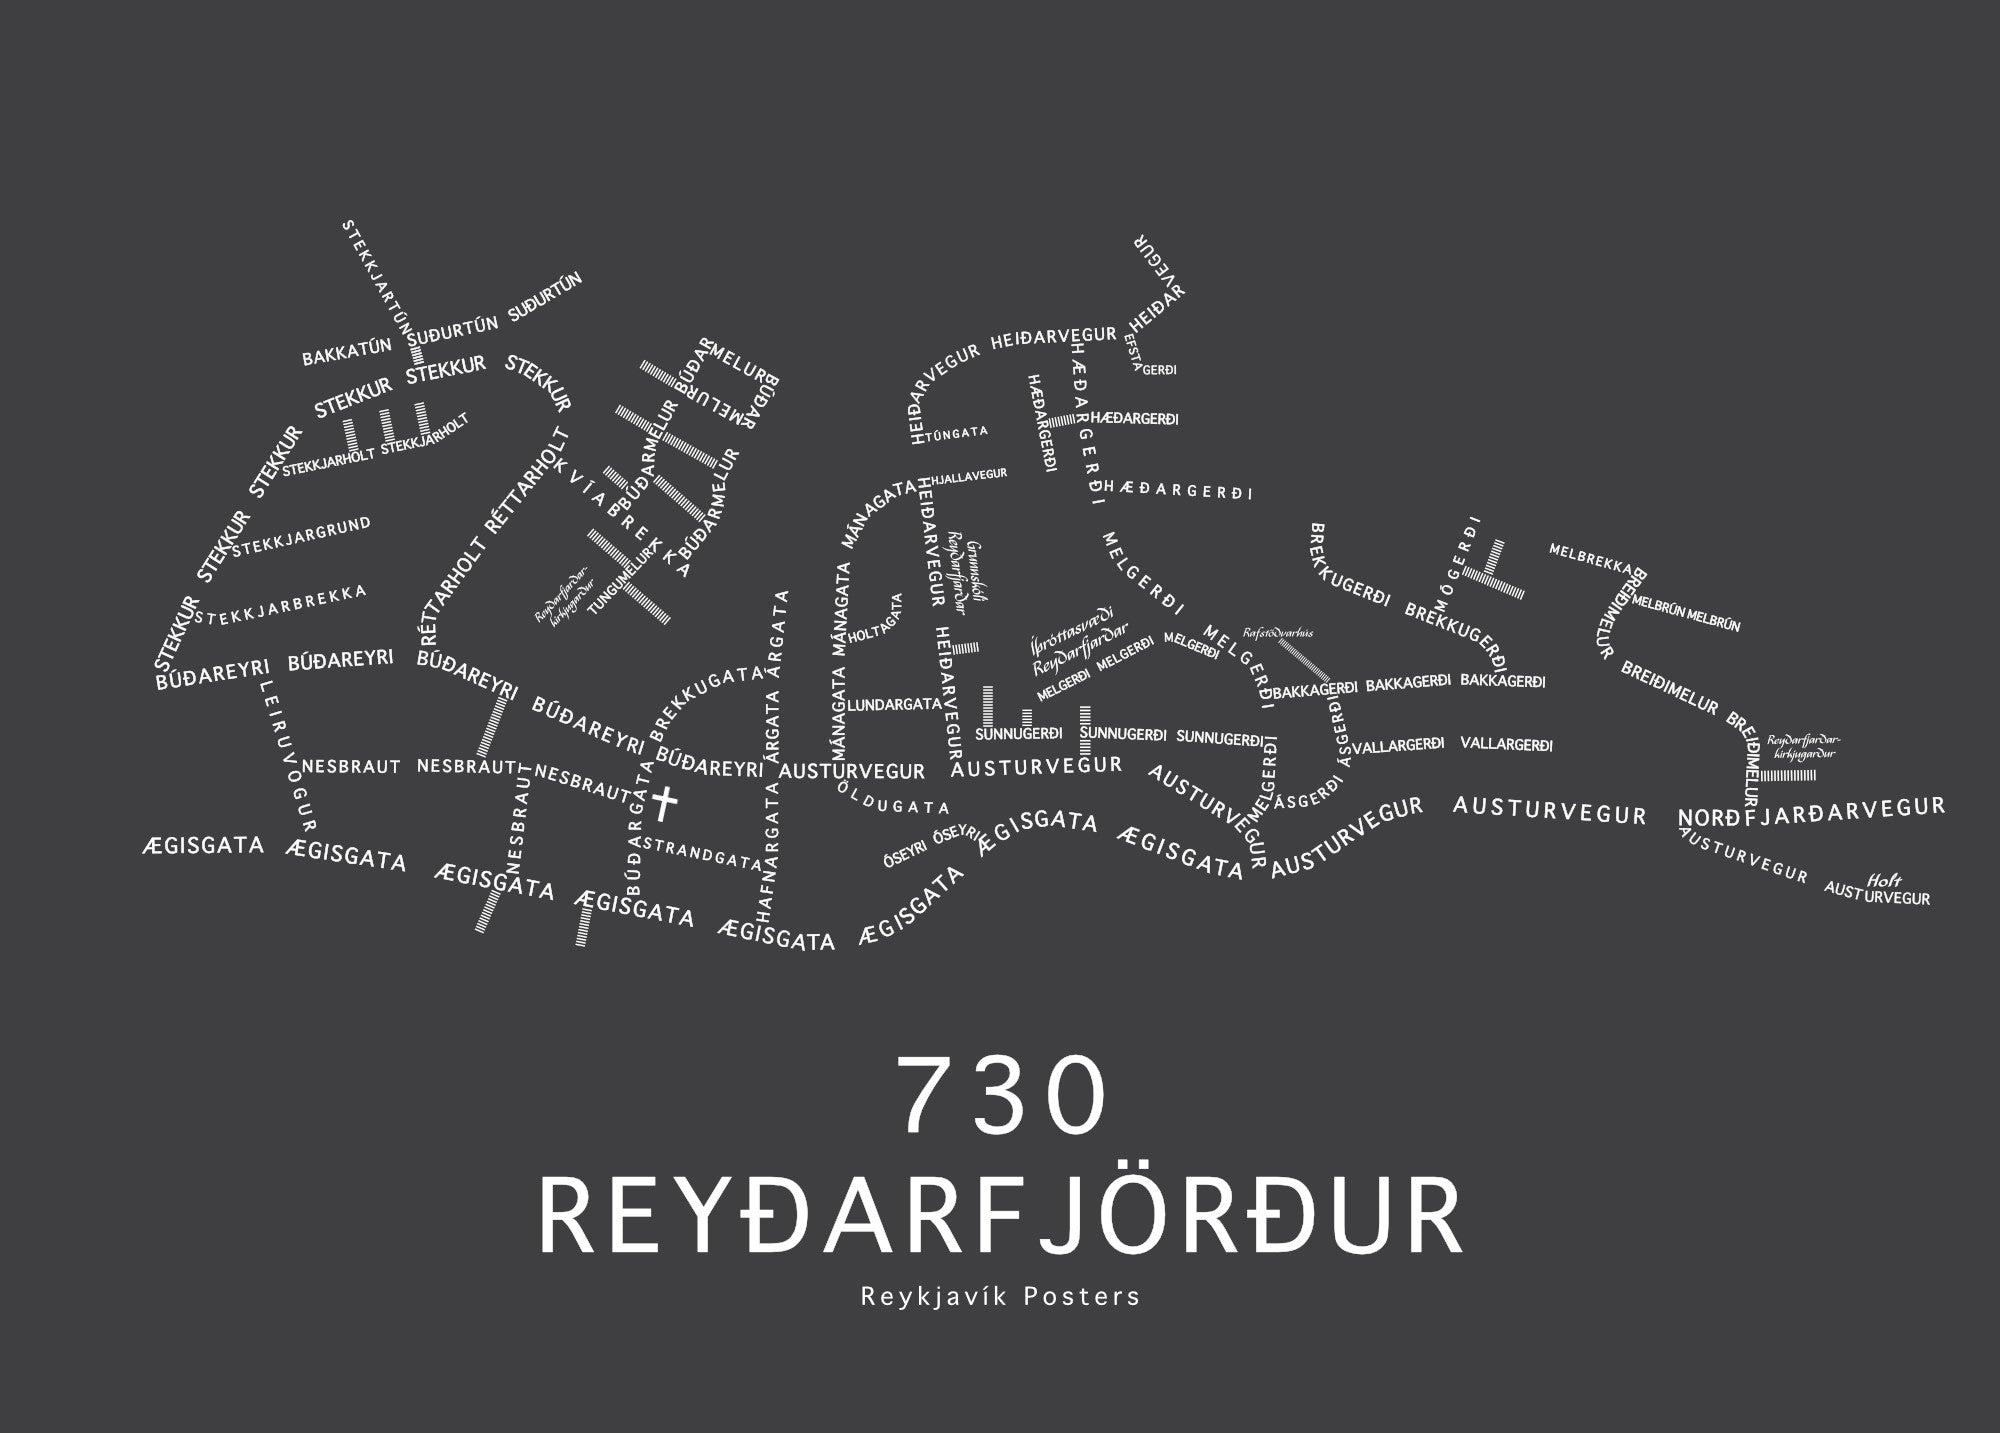 730 Reyðarfjörður